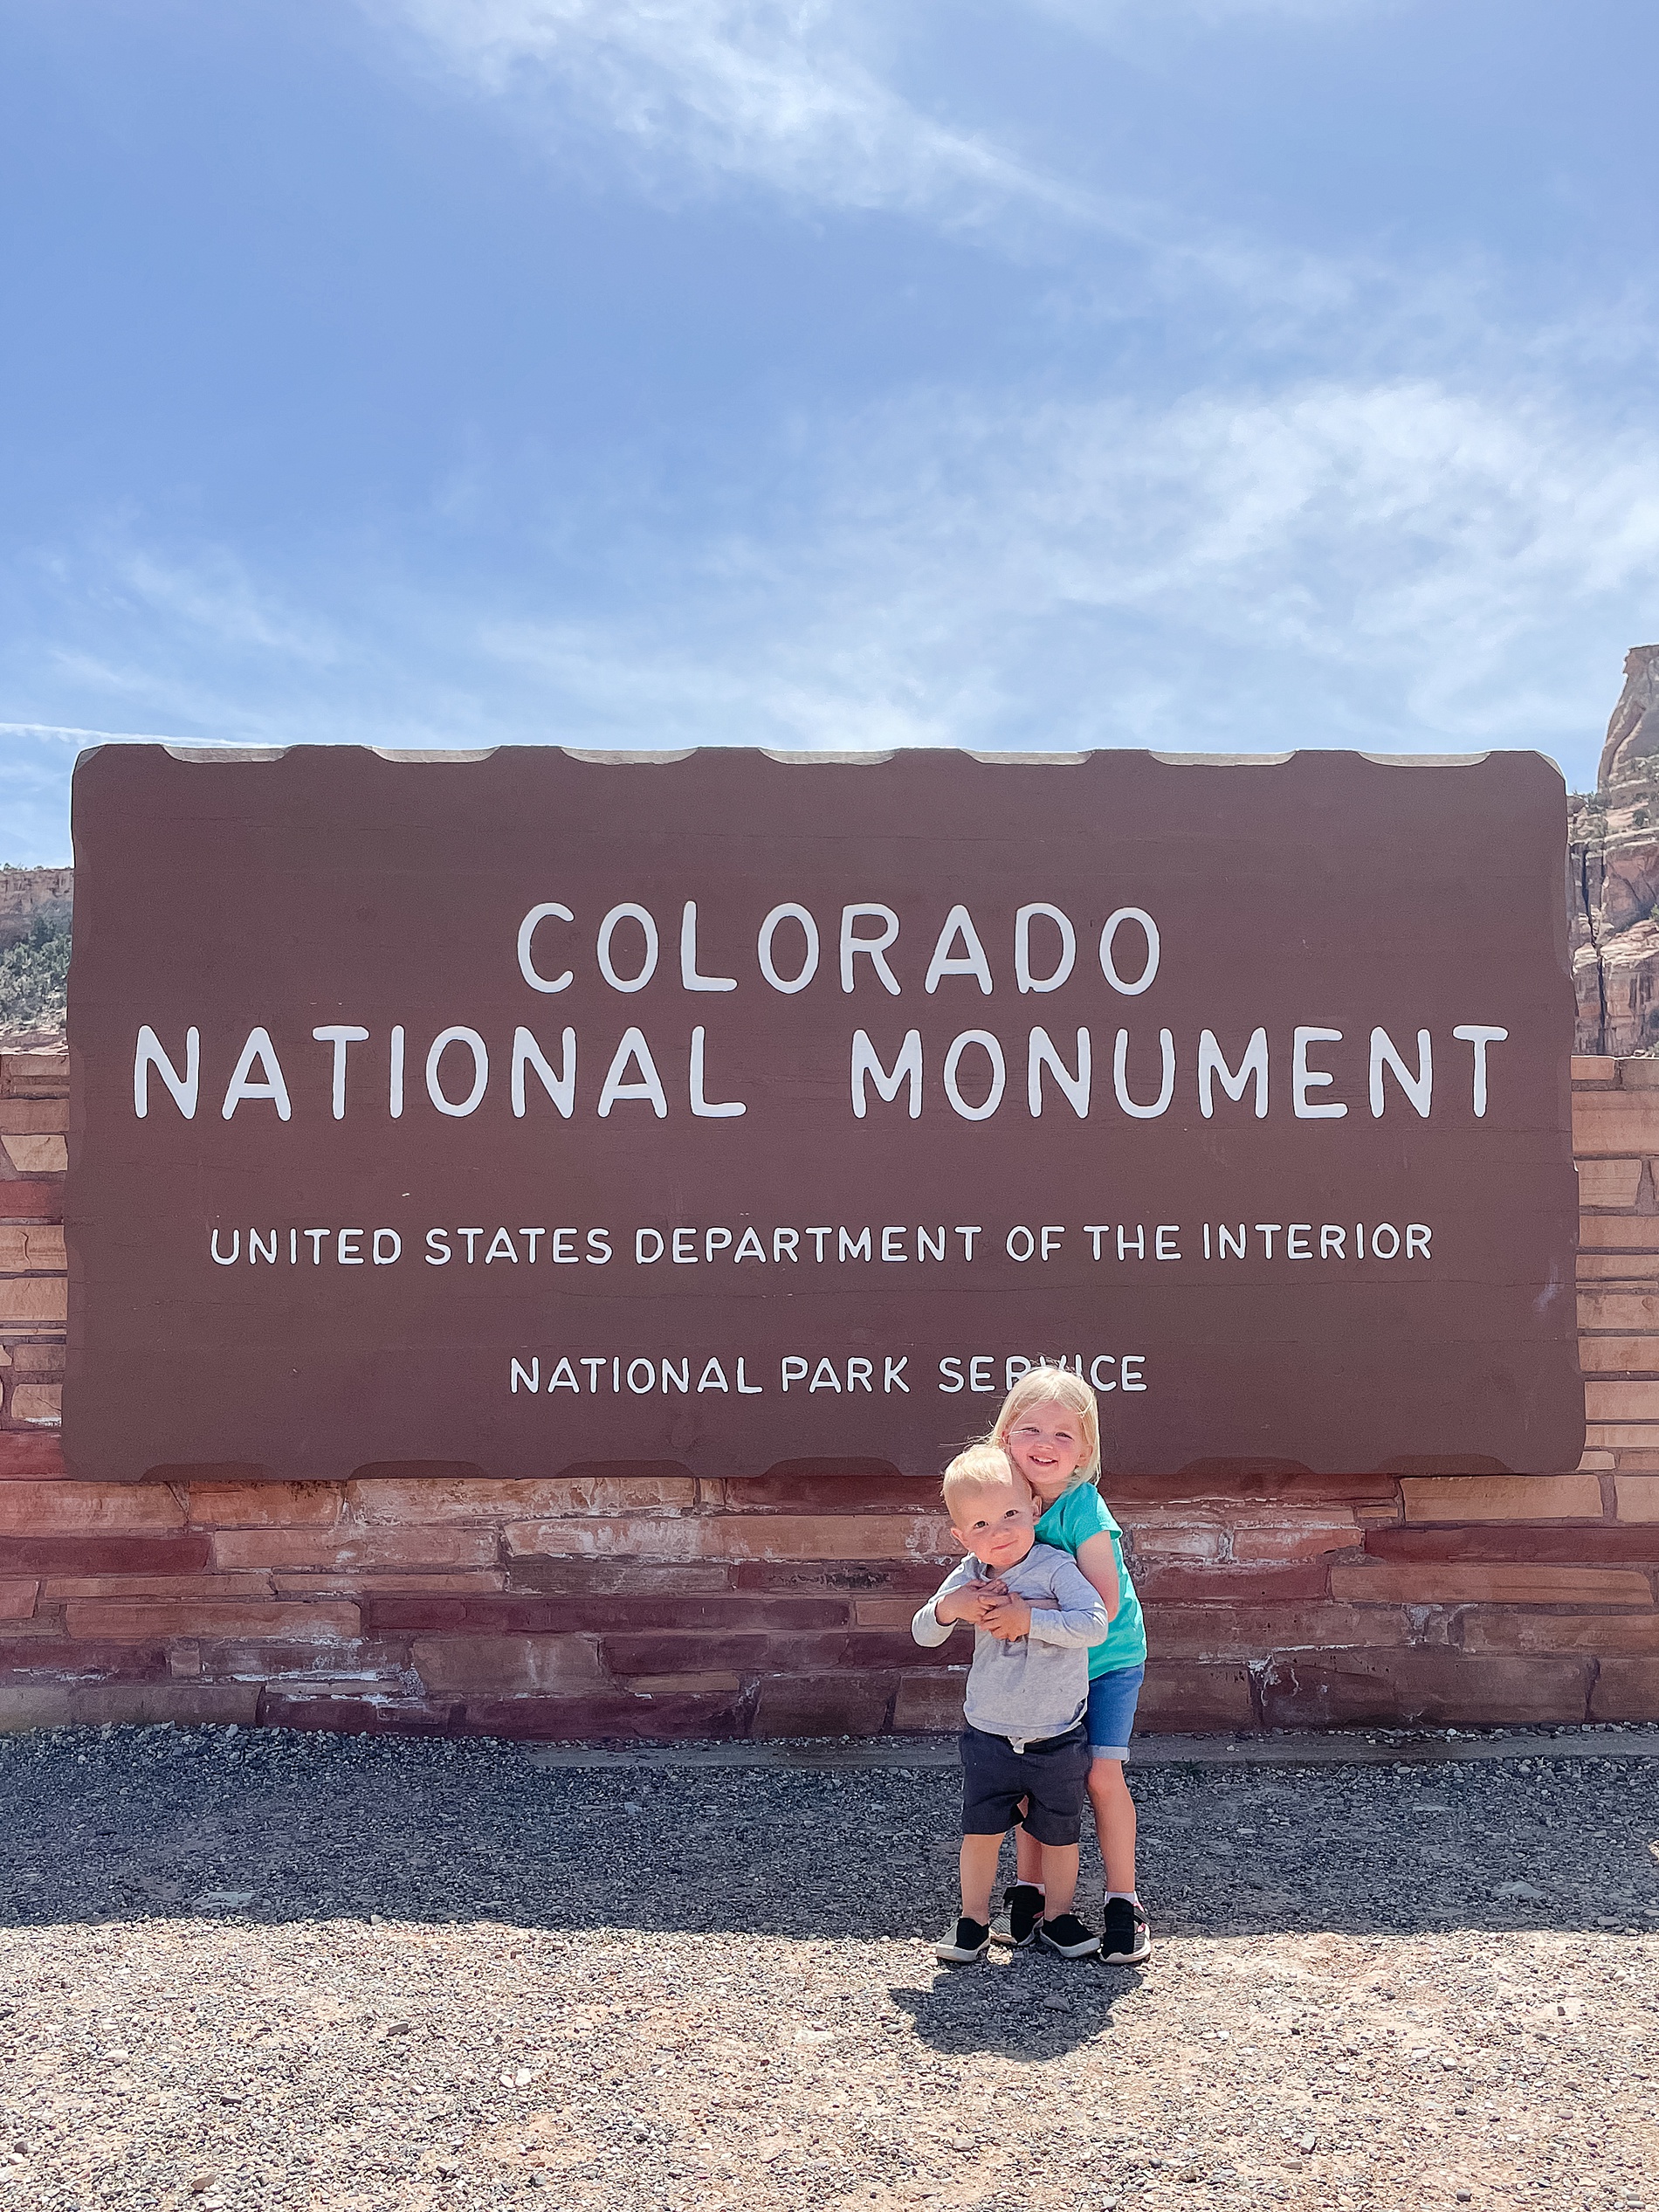 Colorado National Monument in Moab Utah